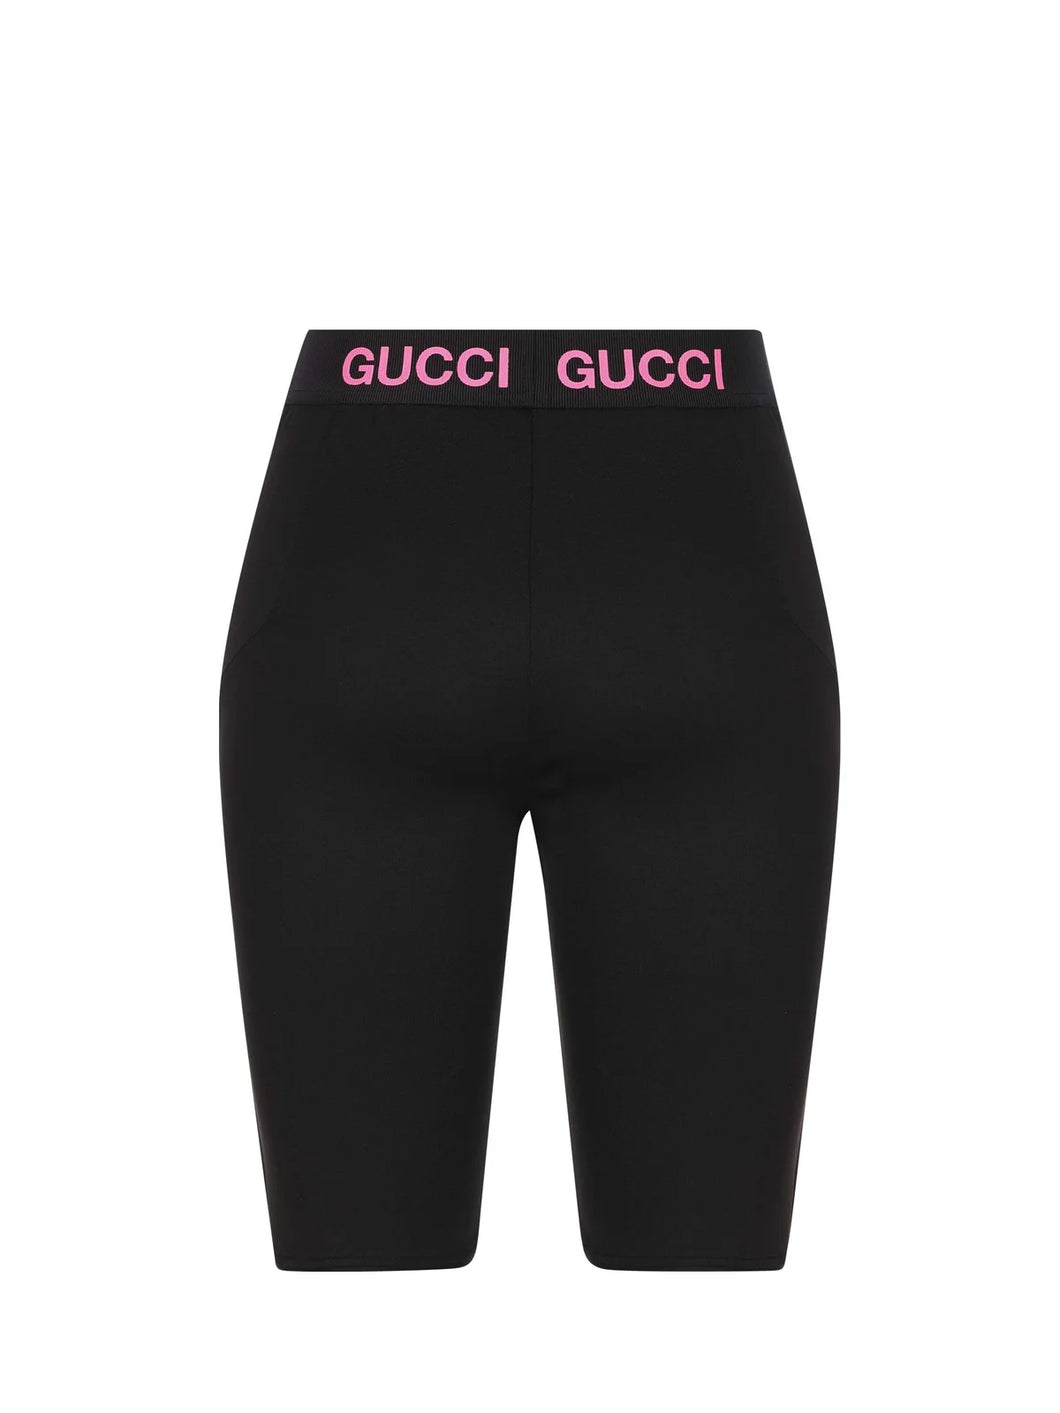 Gucci Technical Jersey Biker Short